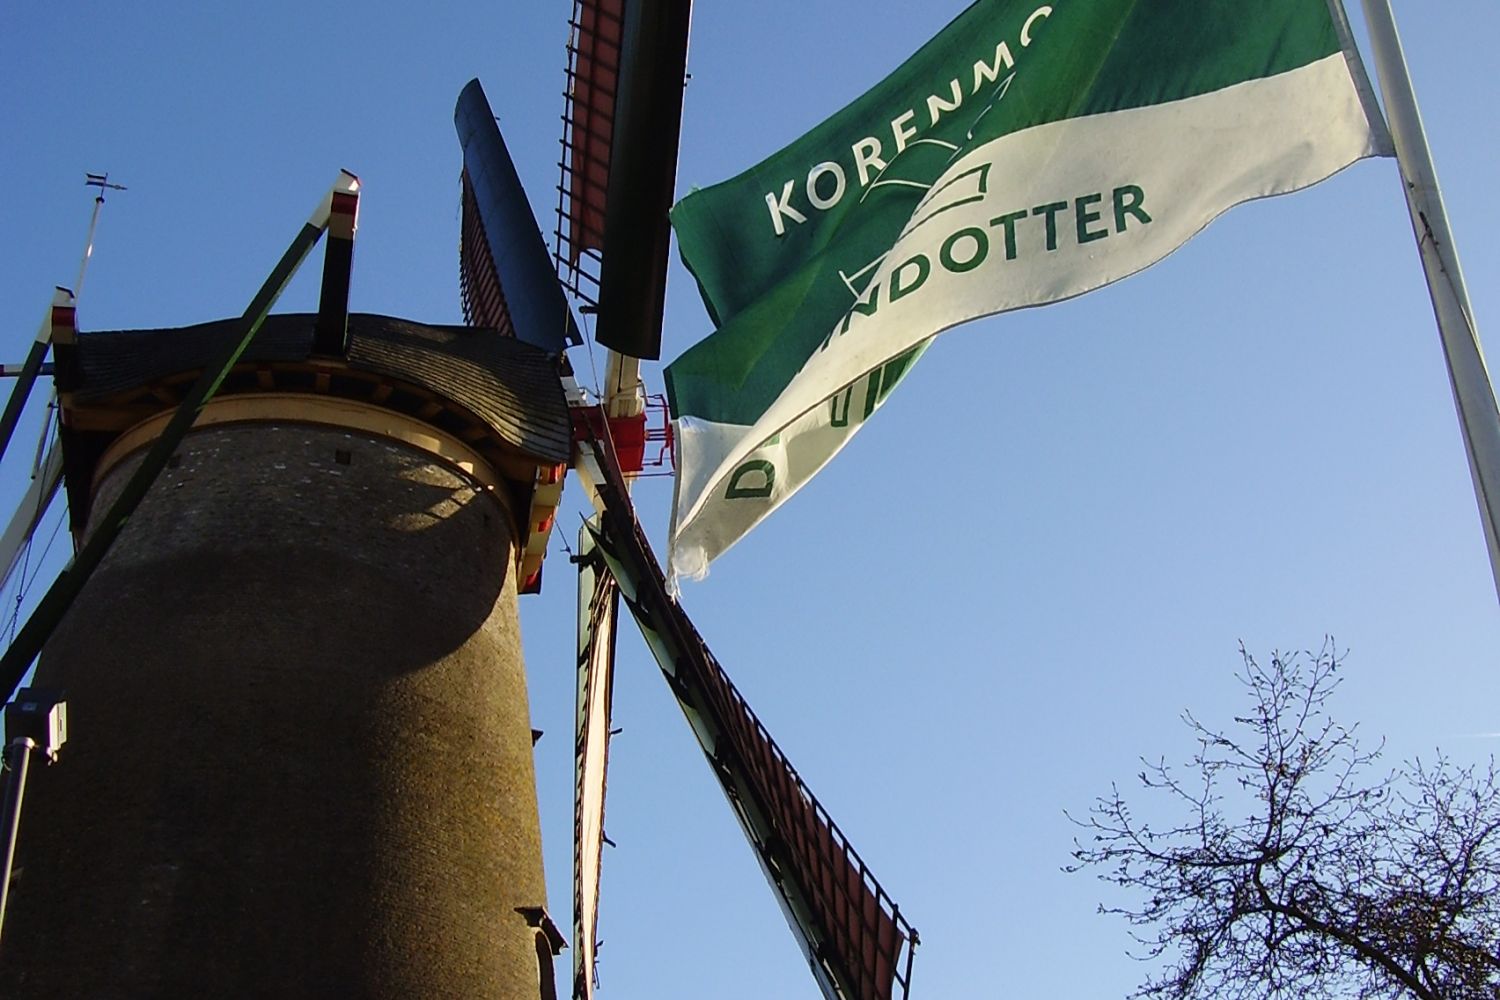 Molen met groen-witte vlag van De Windotter